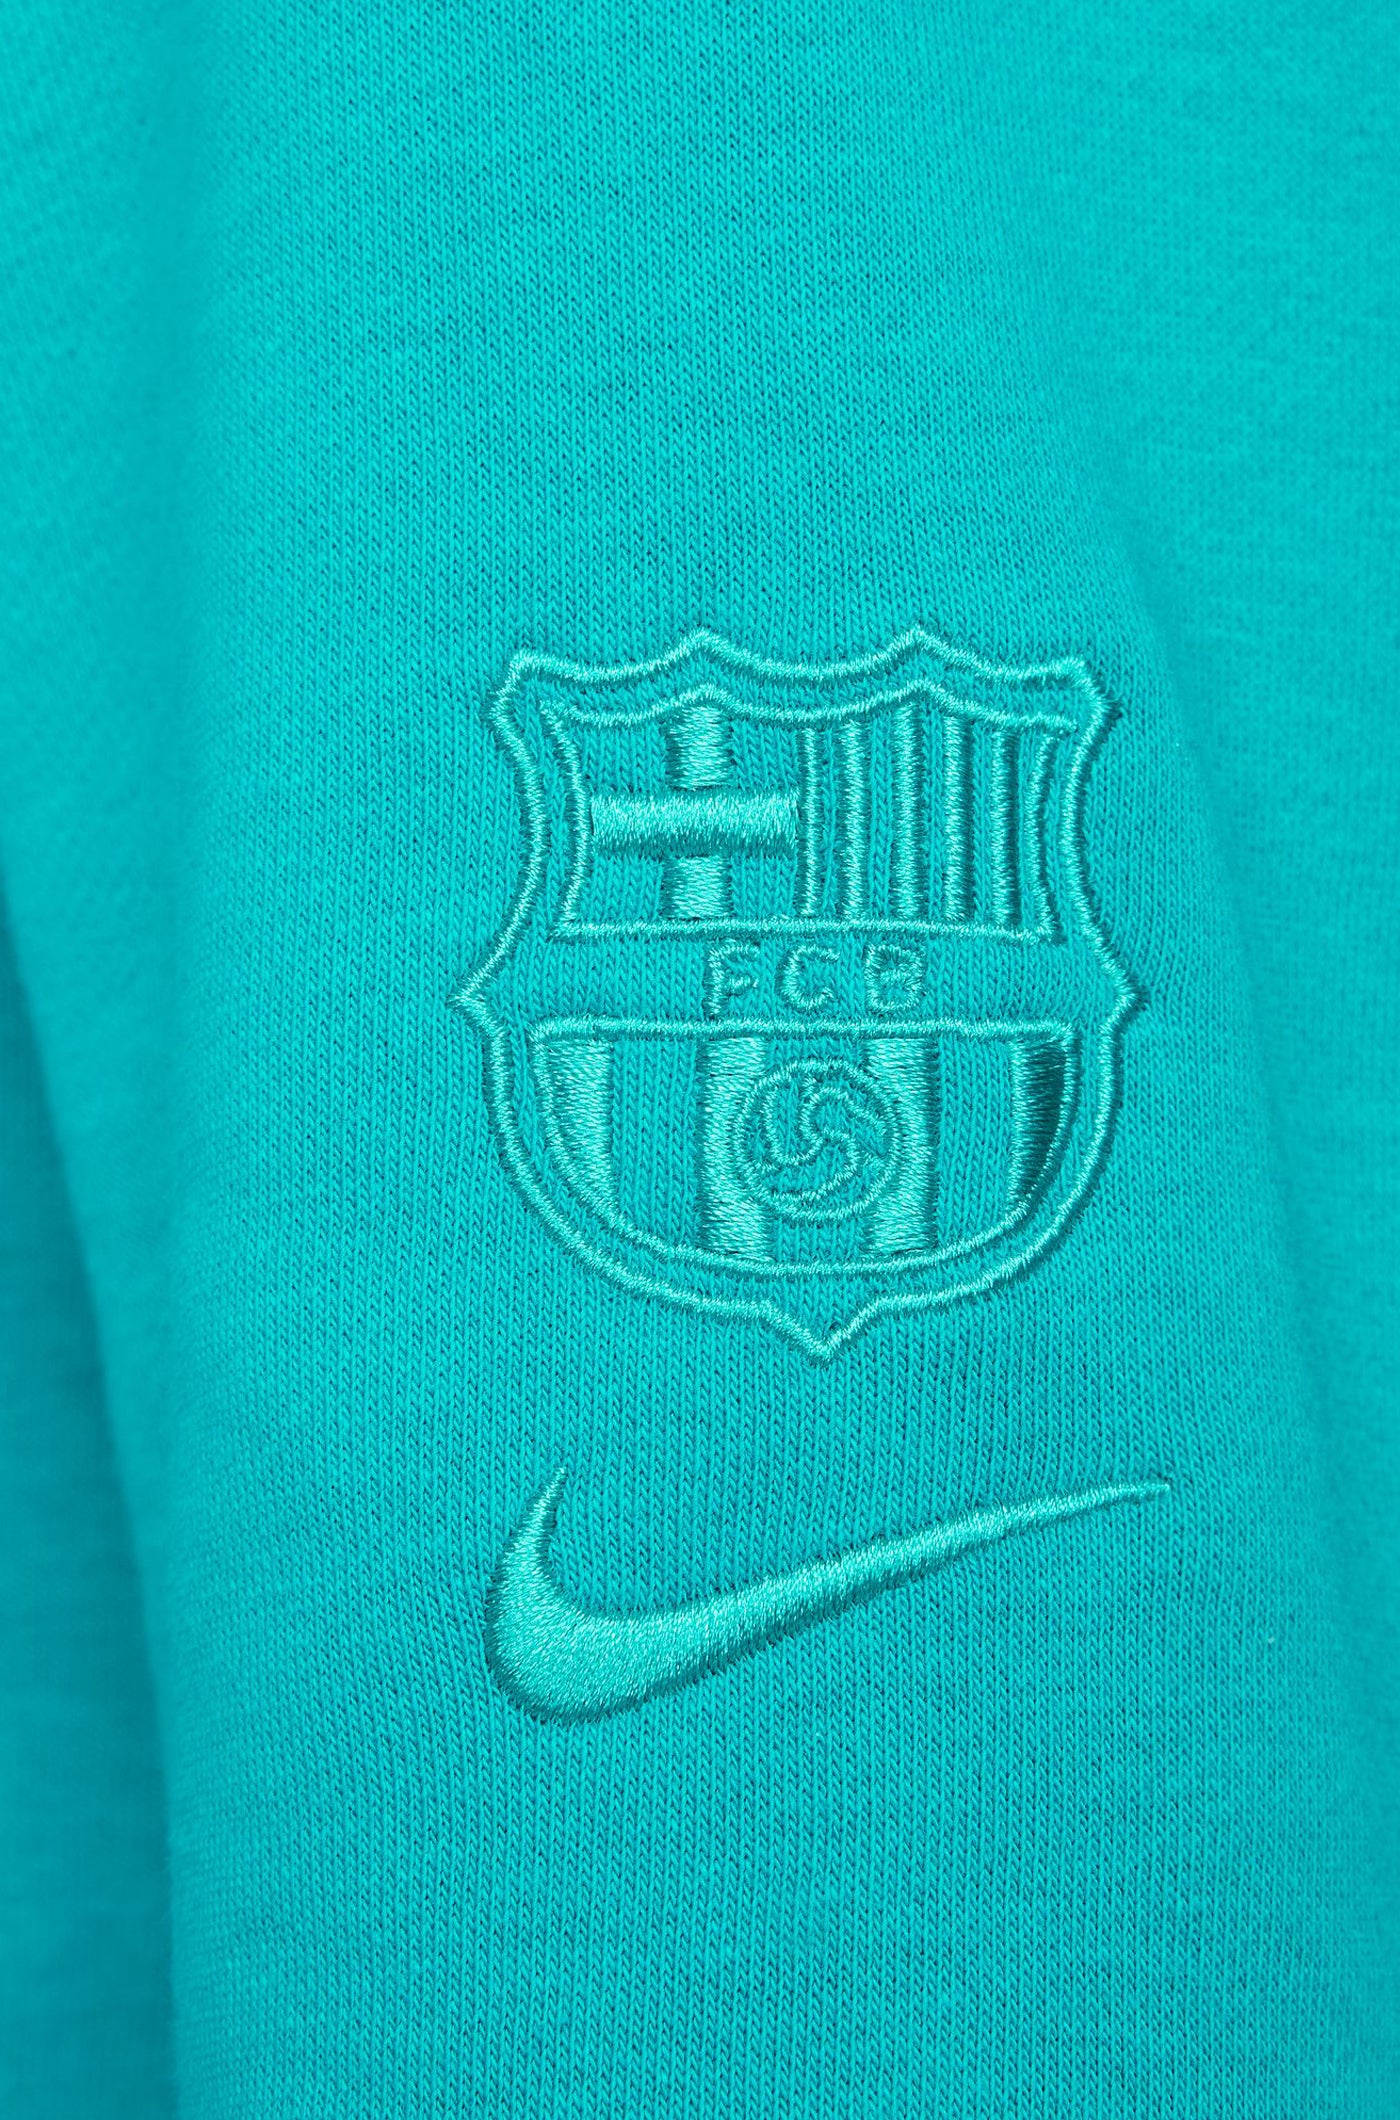 Dessuadora caputxa blau Barça Nike - Dona